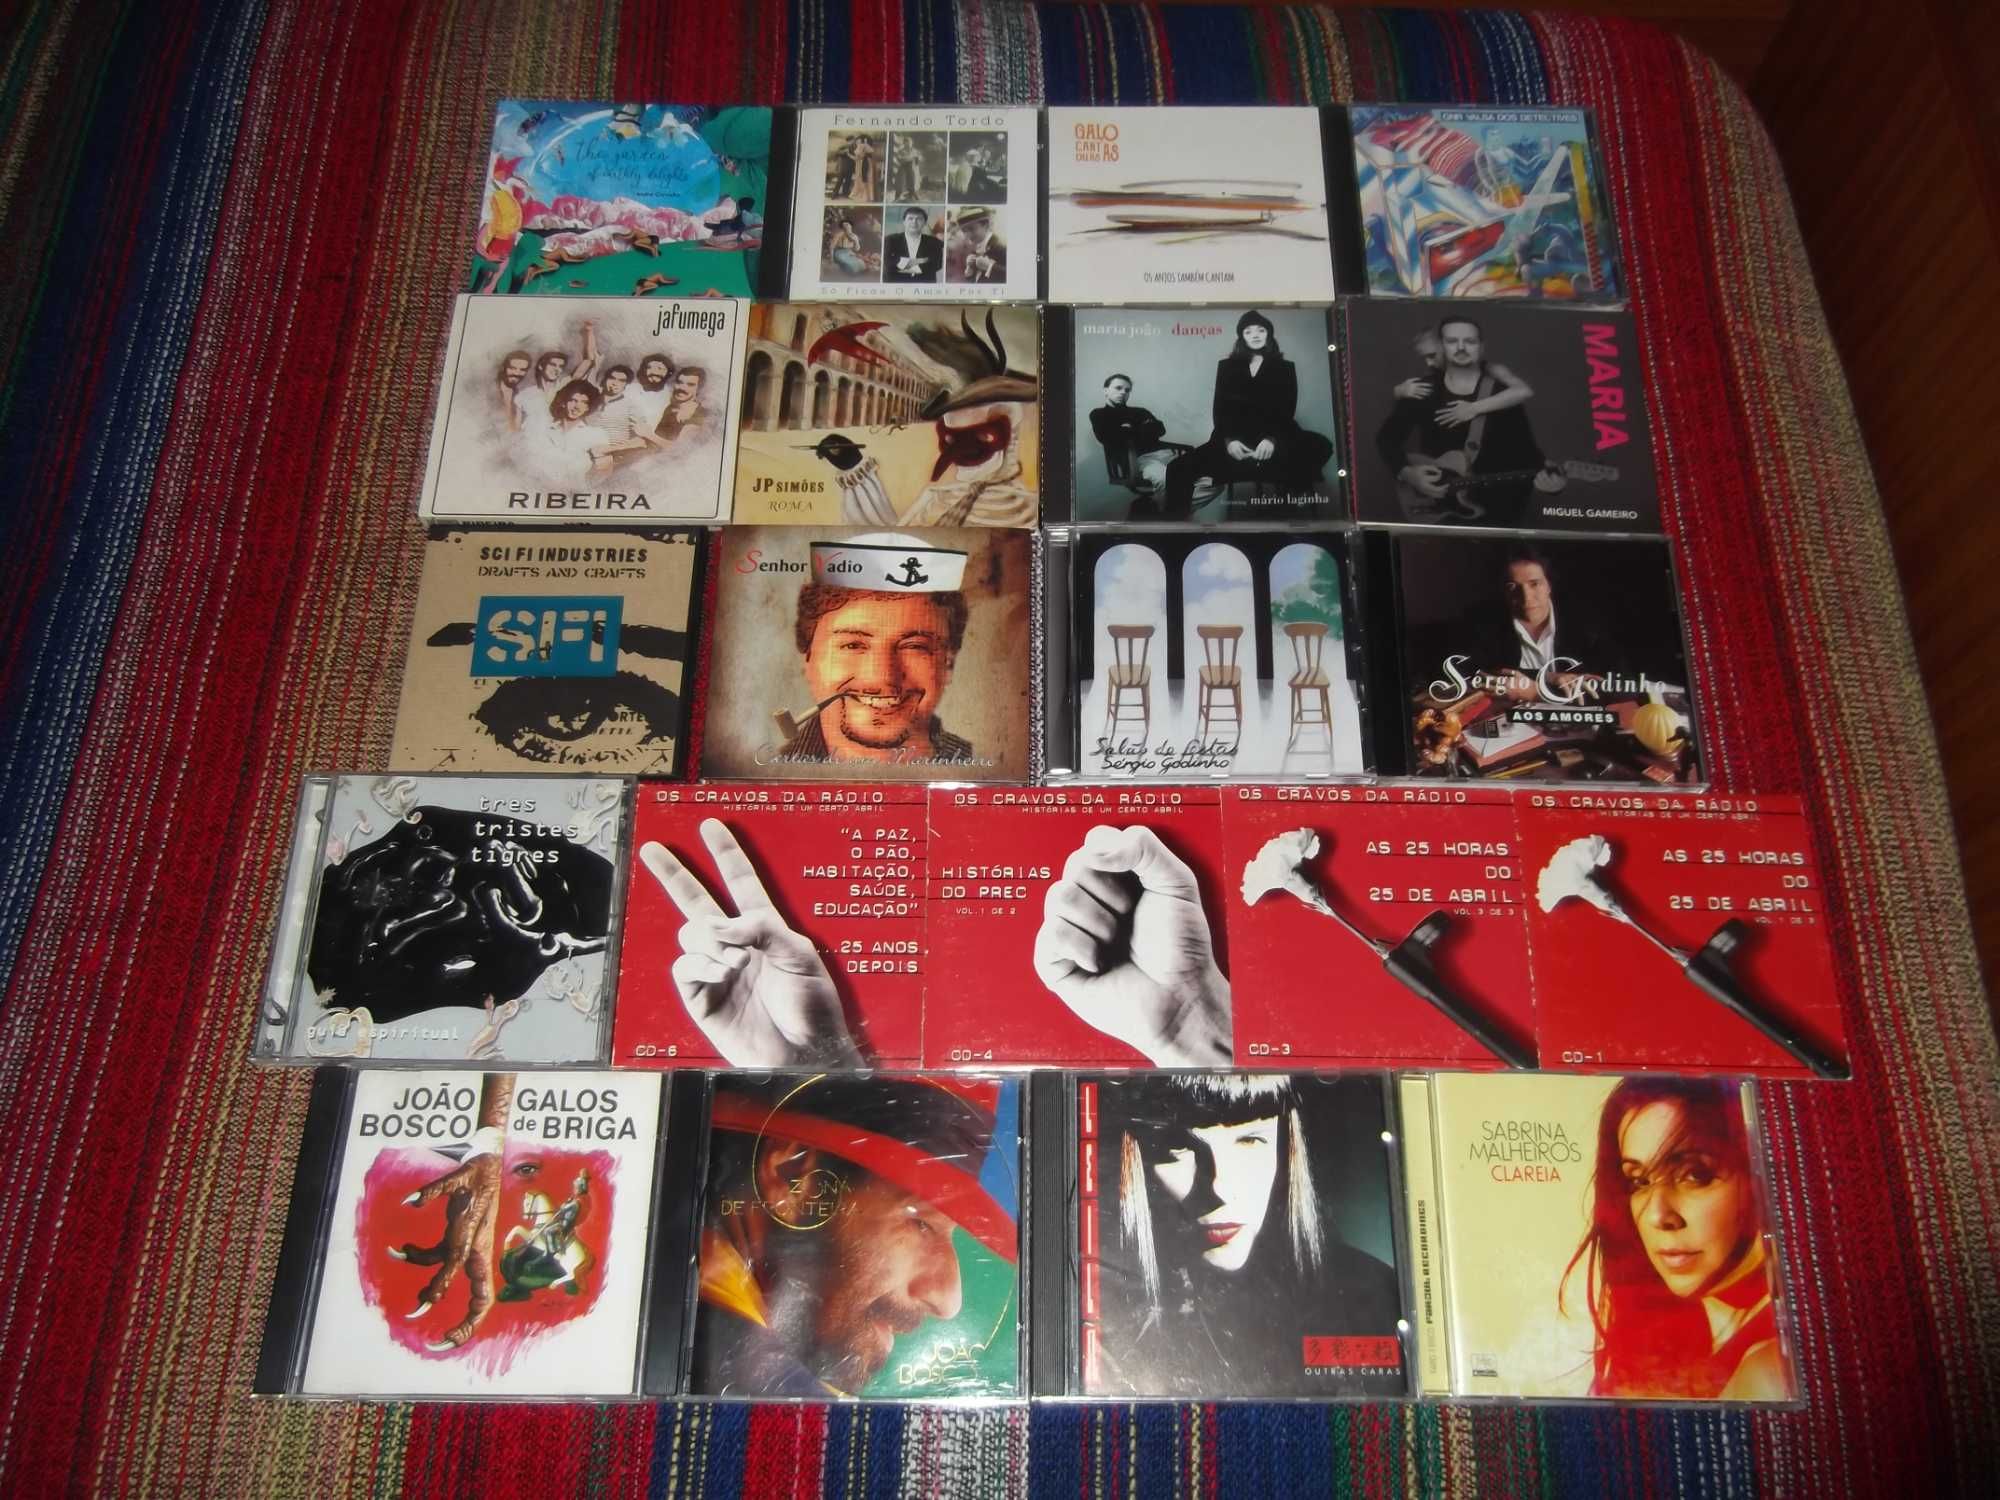 Lote de CDs: música portuguesa e brasileira